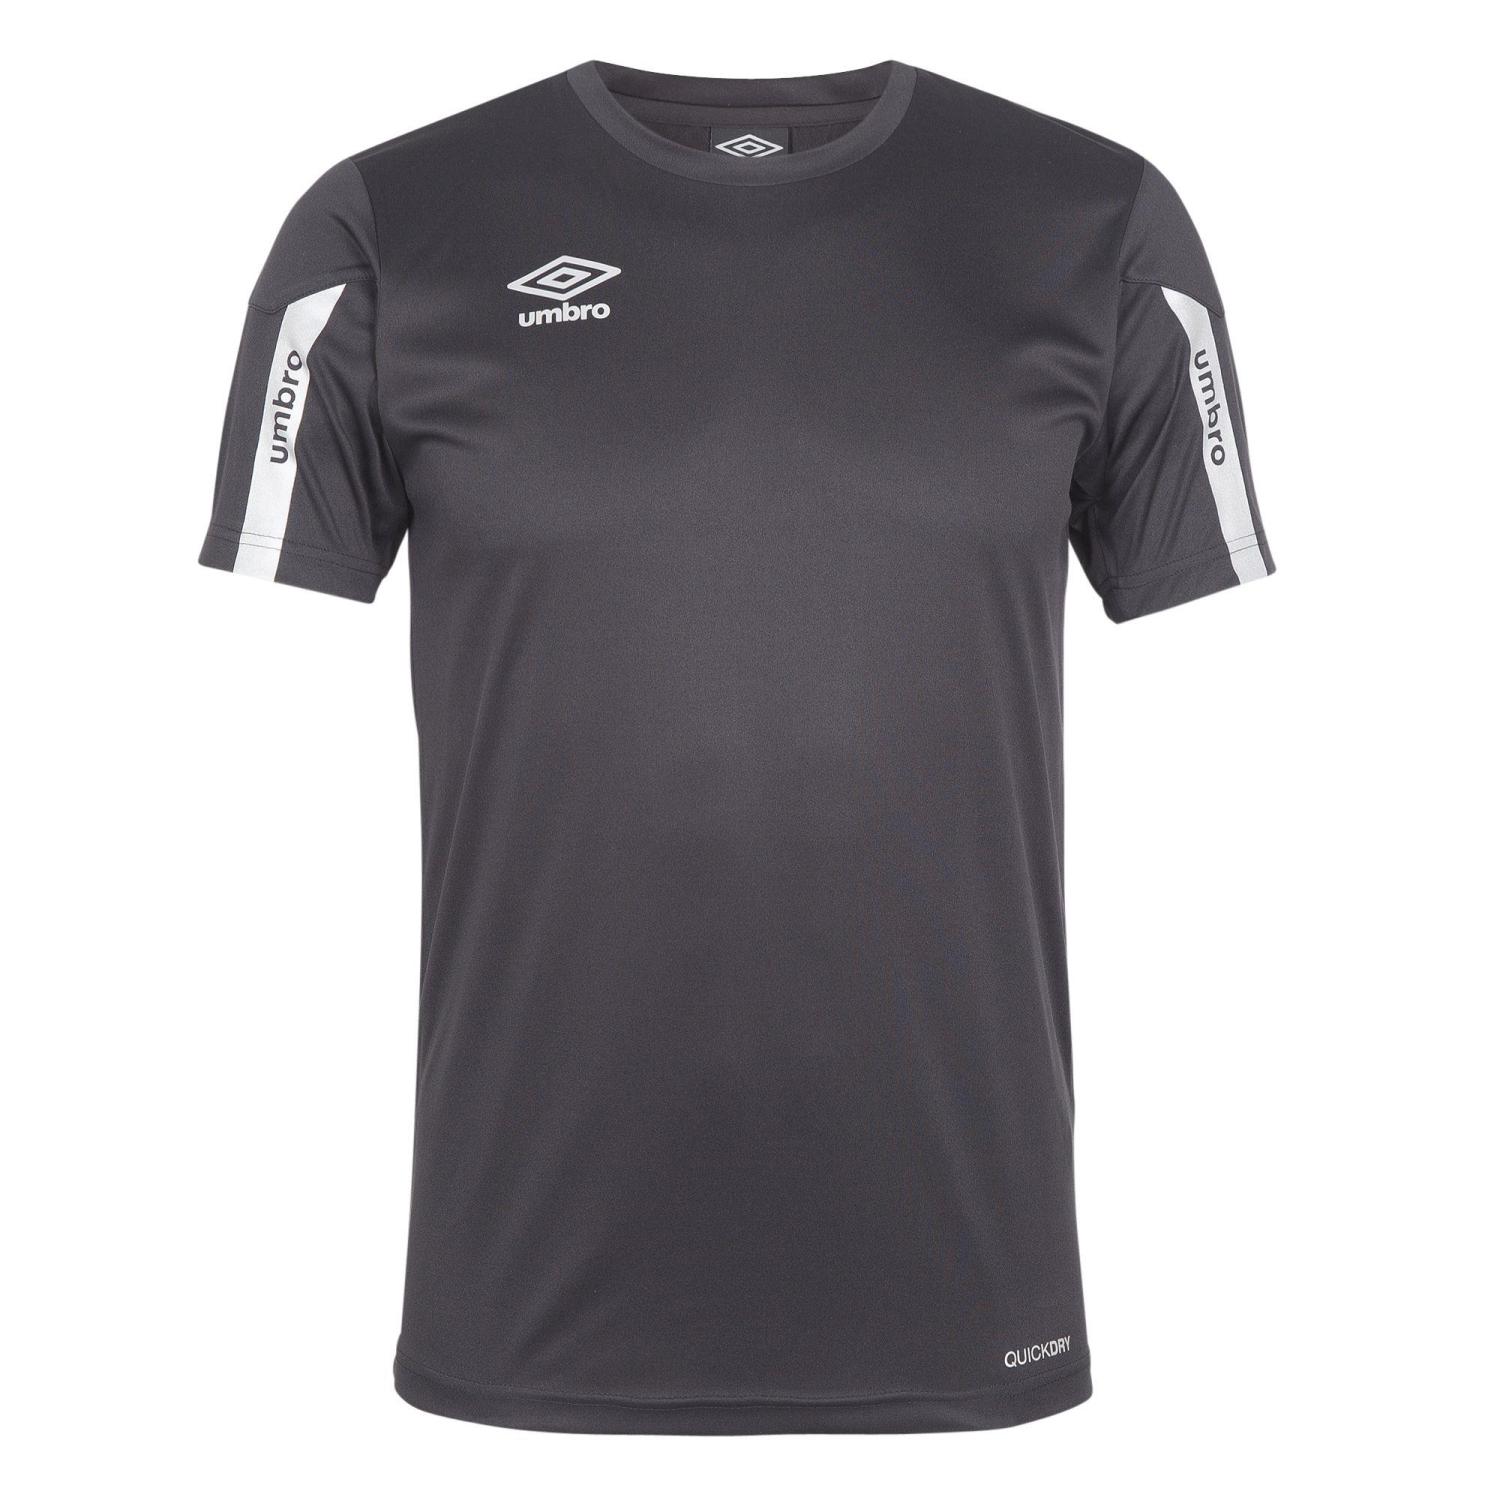 Umbro Core t-shirt svart/vit